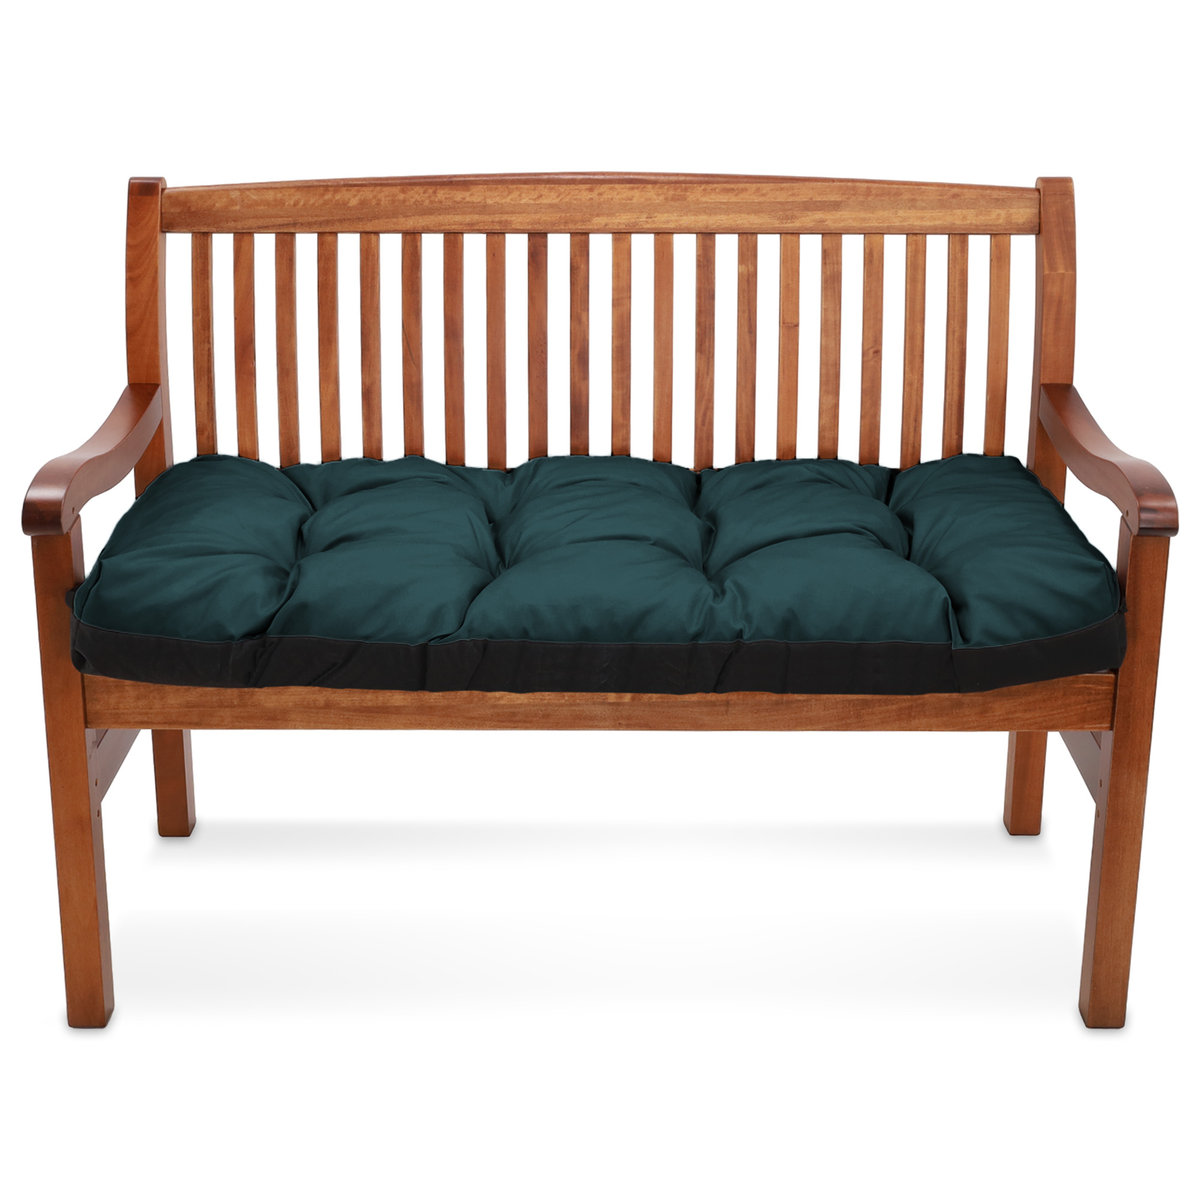 Poduszka na ławkę na zewnątrz, poduszka na paletę - 120x40 cm poduszki wypoczynkowe i poduszki podłogowe do mebli ogrodowych Zielony